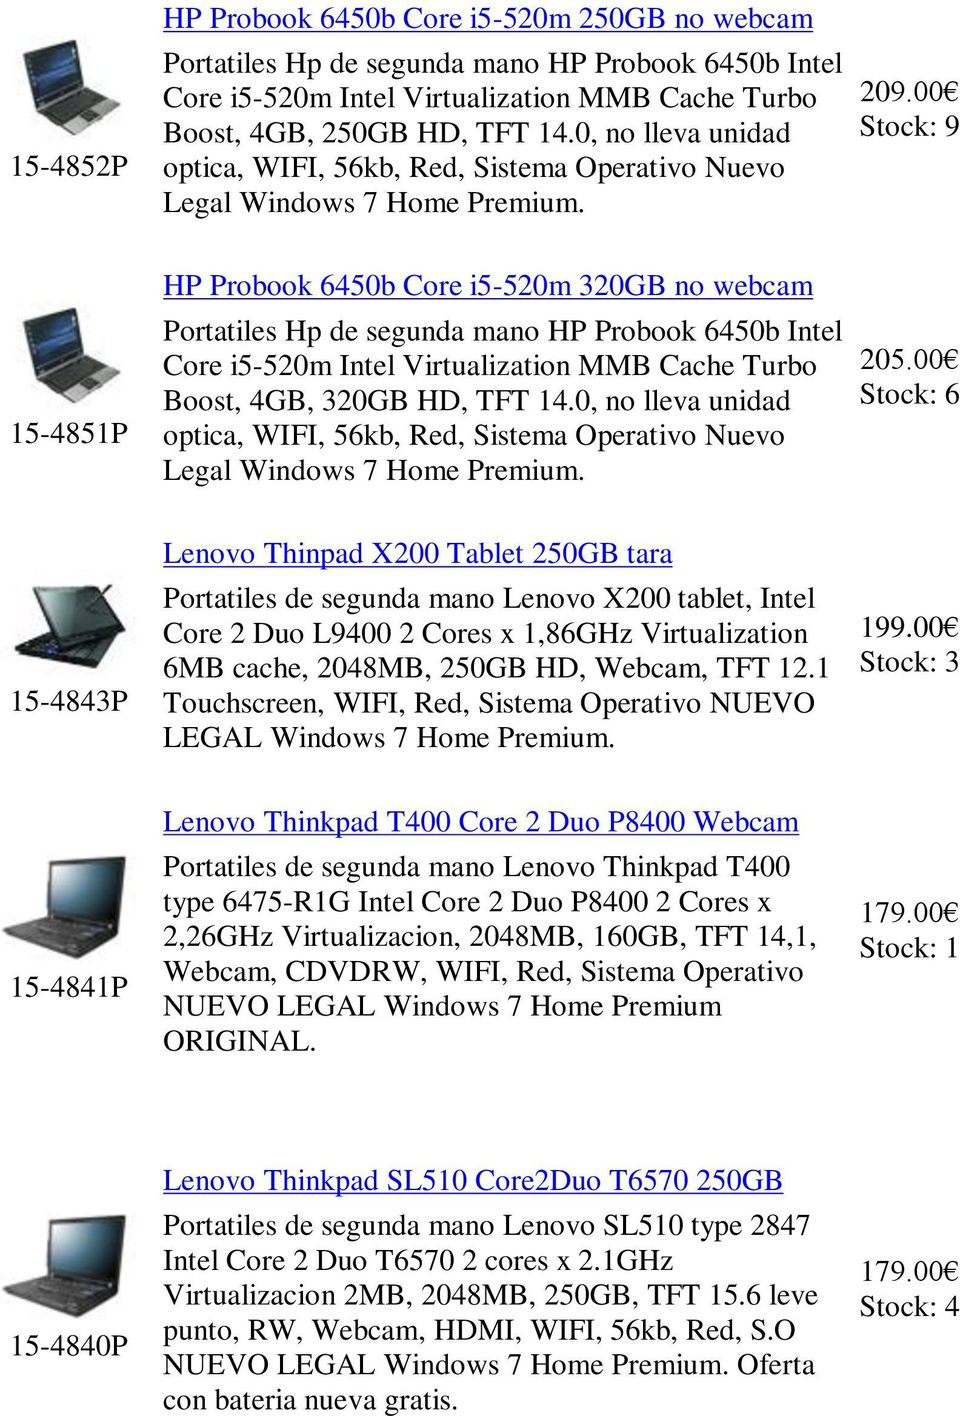 9 15-4851P HP Probook 6450b Core i5-520m 320GB no webcam Portatiles Hp de segunda mano HP Probook 6450b Intel Core i5-520m Intel Virtualization MMB Cache Turbo Boost, 4GB, 320GB HD, TFT 14. 205.